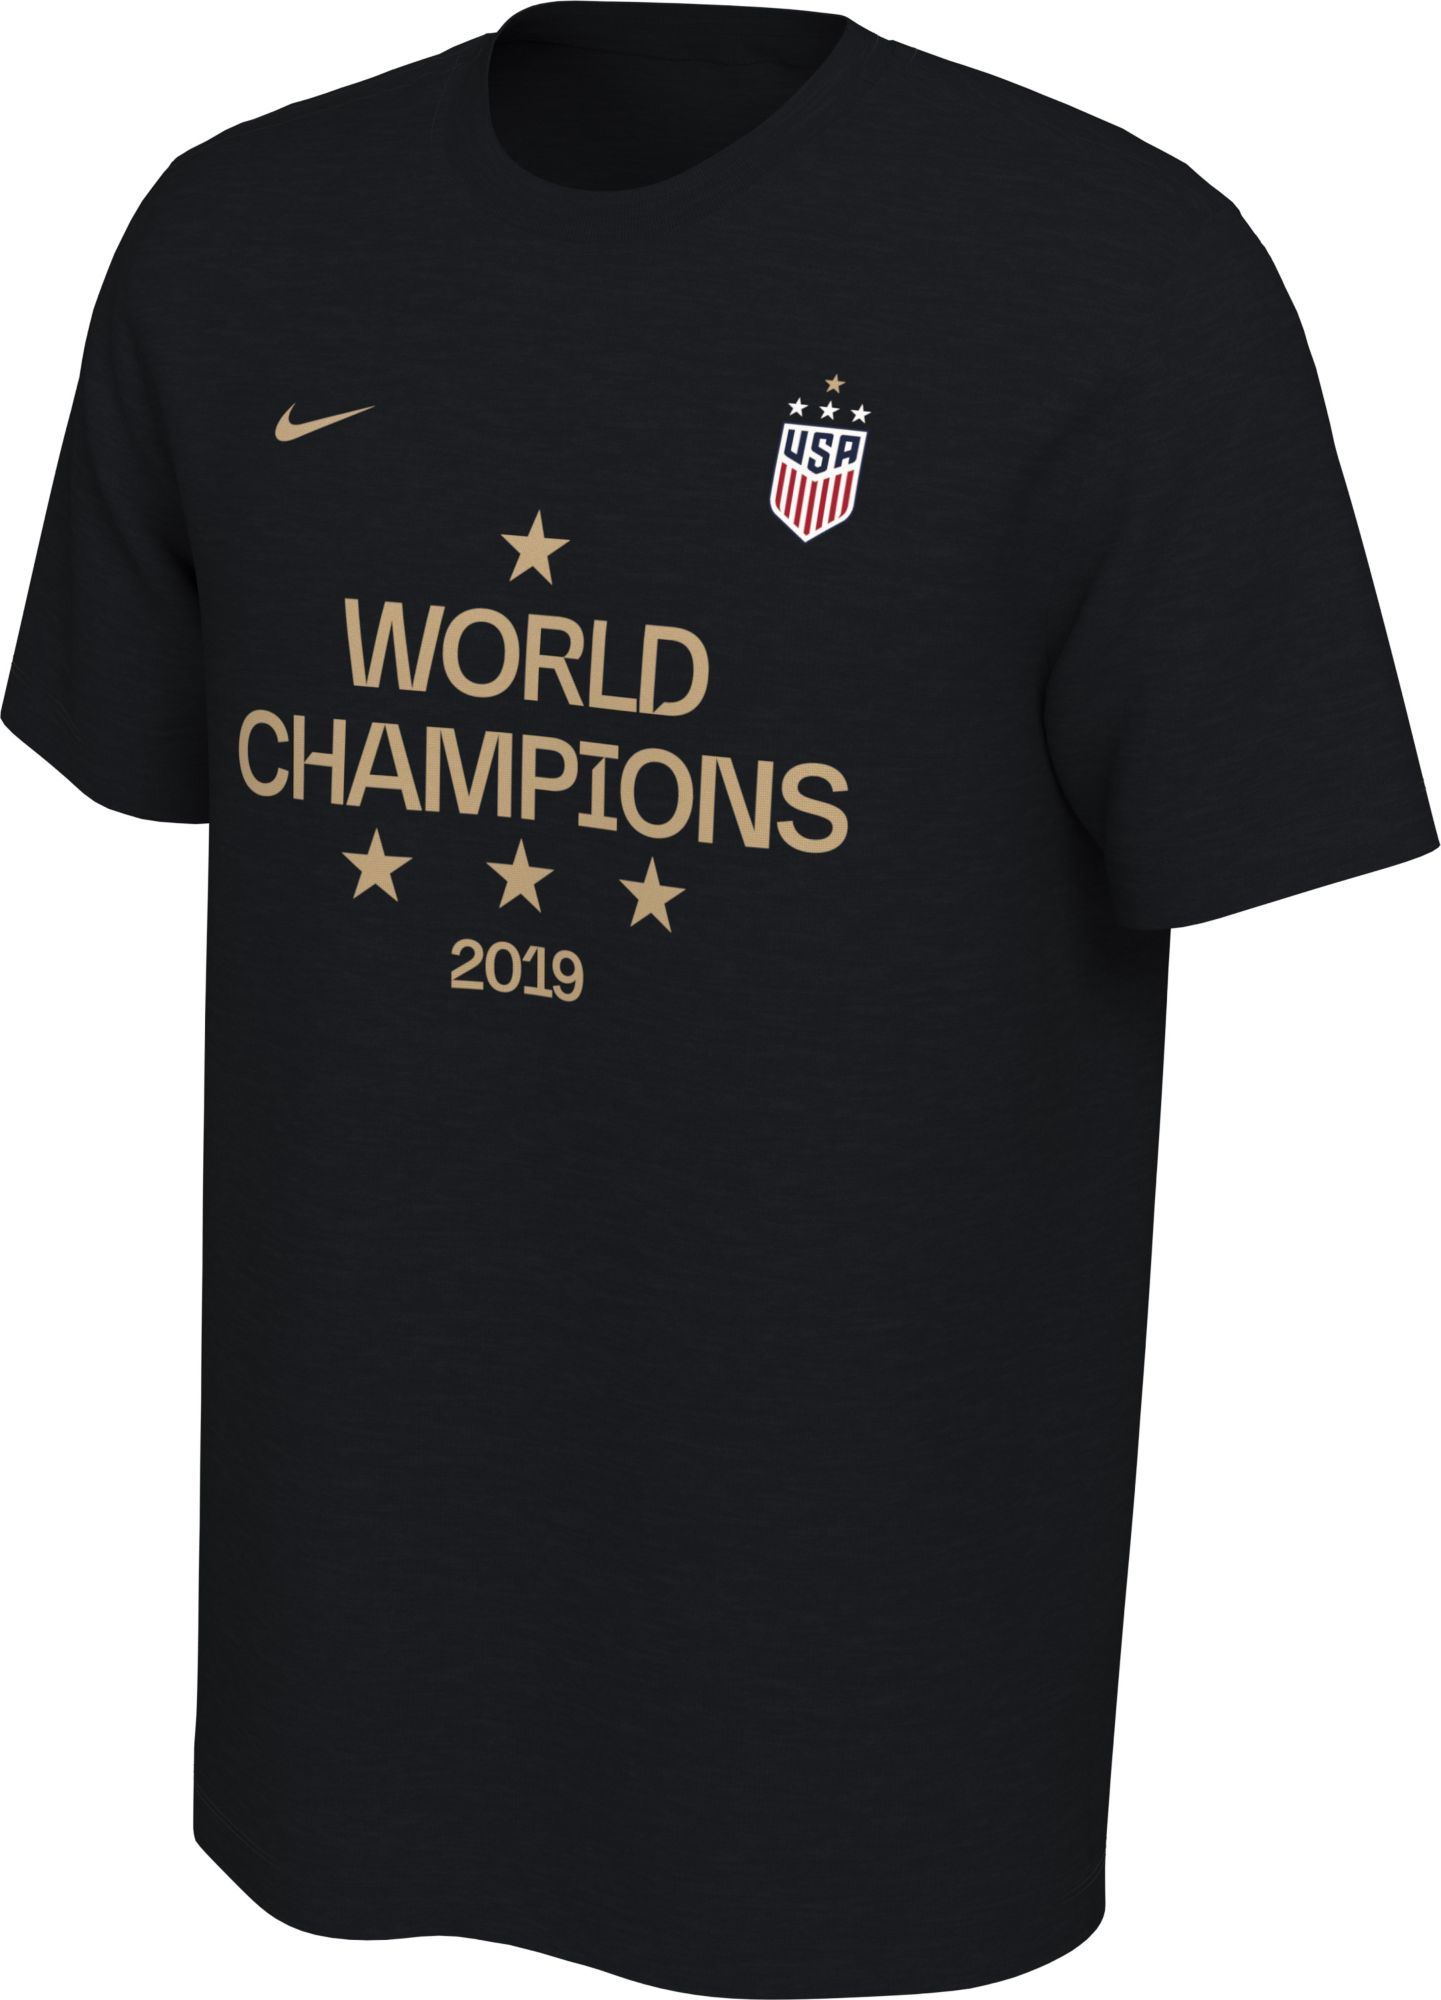 nike women's world cup shirt